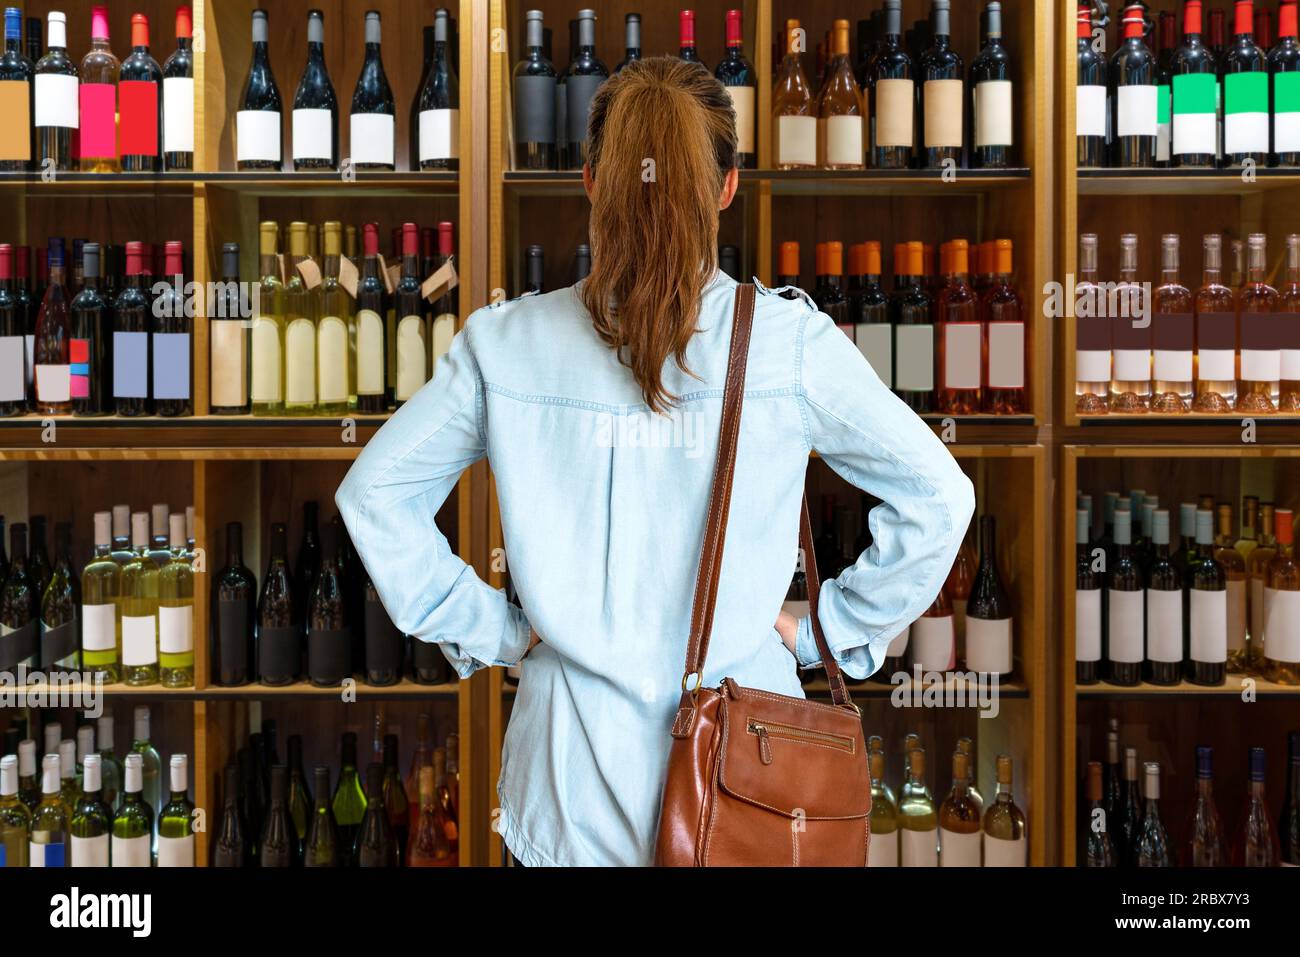 Foto von der Rückansicht einer Frau, die Wein im Geschäft auswählt, steht vor den Regalen mit Flaschen Wein. Stockfoto